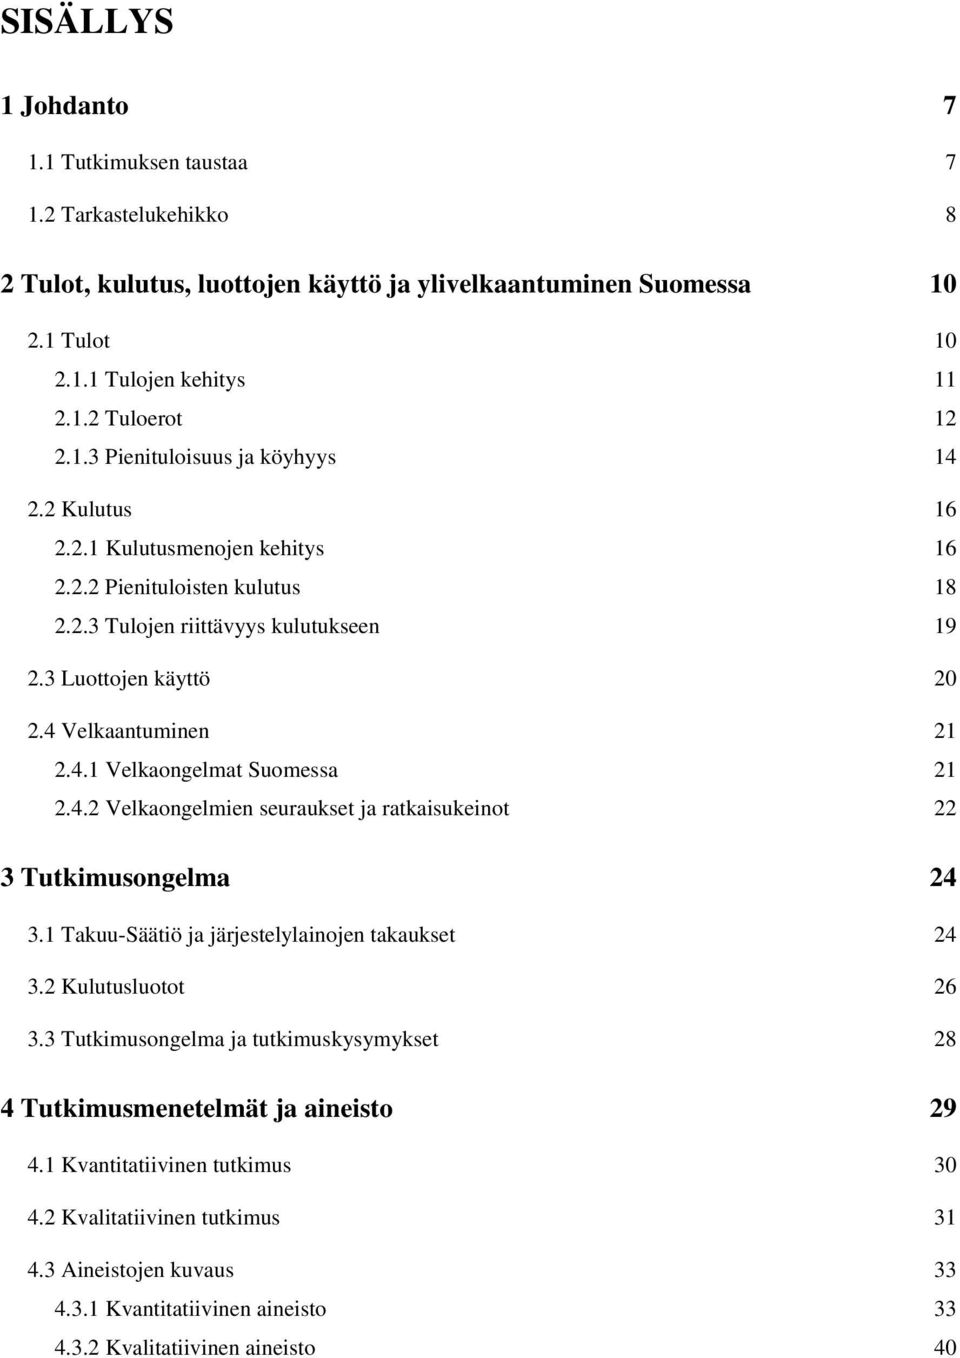 Velkaantuminen 21 2.4.1 Velkaongelmat Suomessa 21 2.4.2 Velkaongelmien seuraukset ja ratkaisukeinot 22 3 Tutkimusongelma 24 3.1 Takuu-Säätiö ja järjestelylainojen takaukset 24 3.2 Kulutusluotot 26 3.